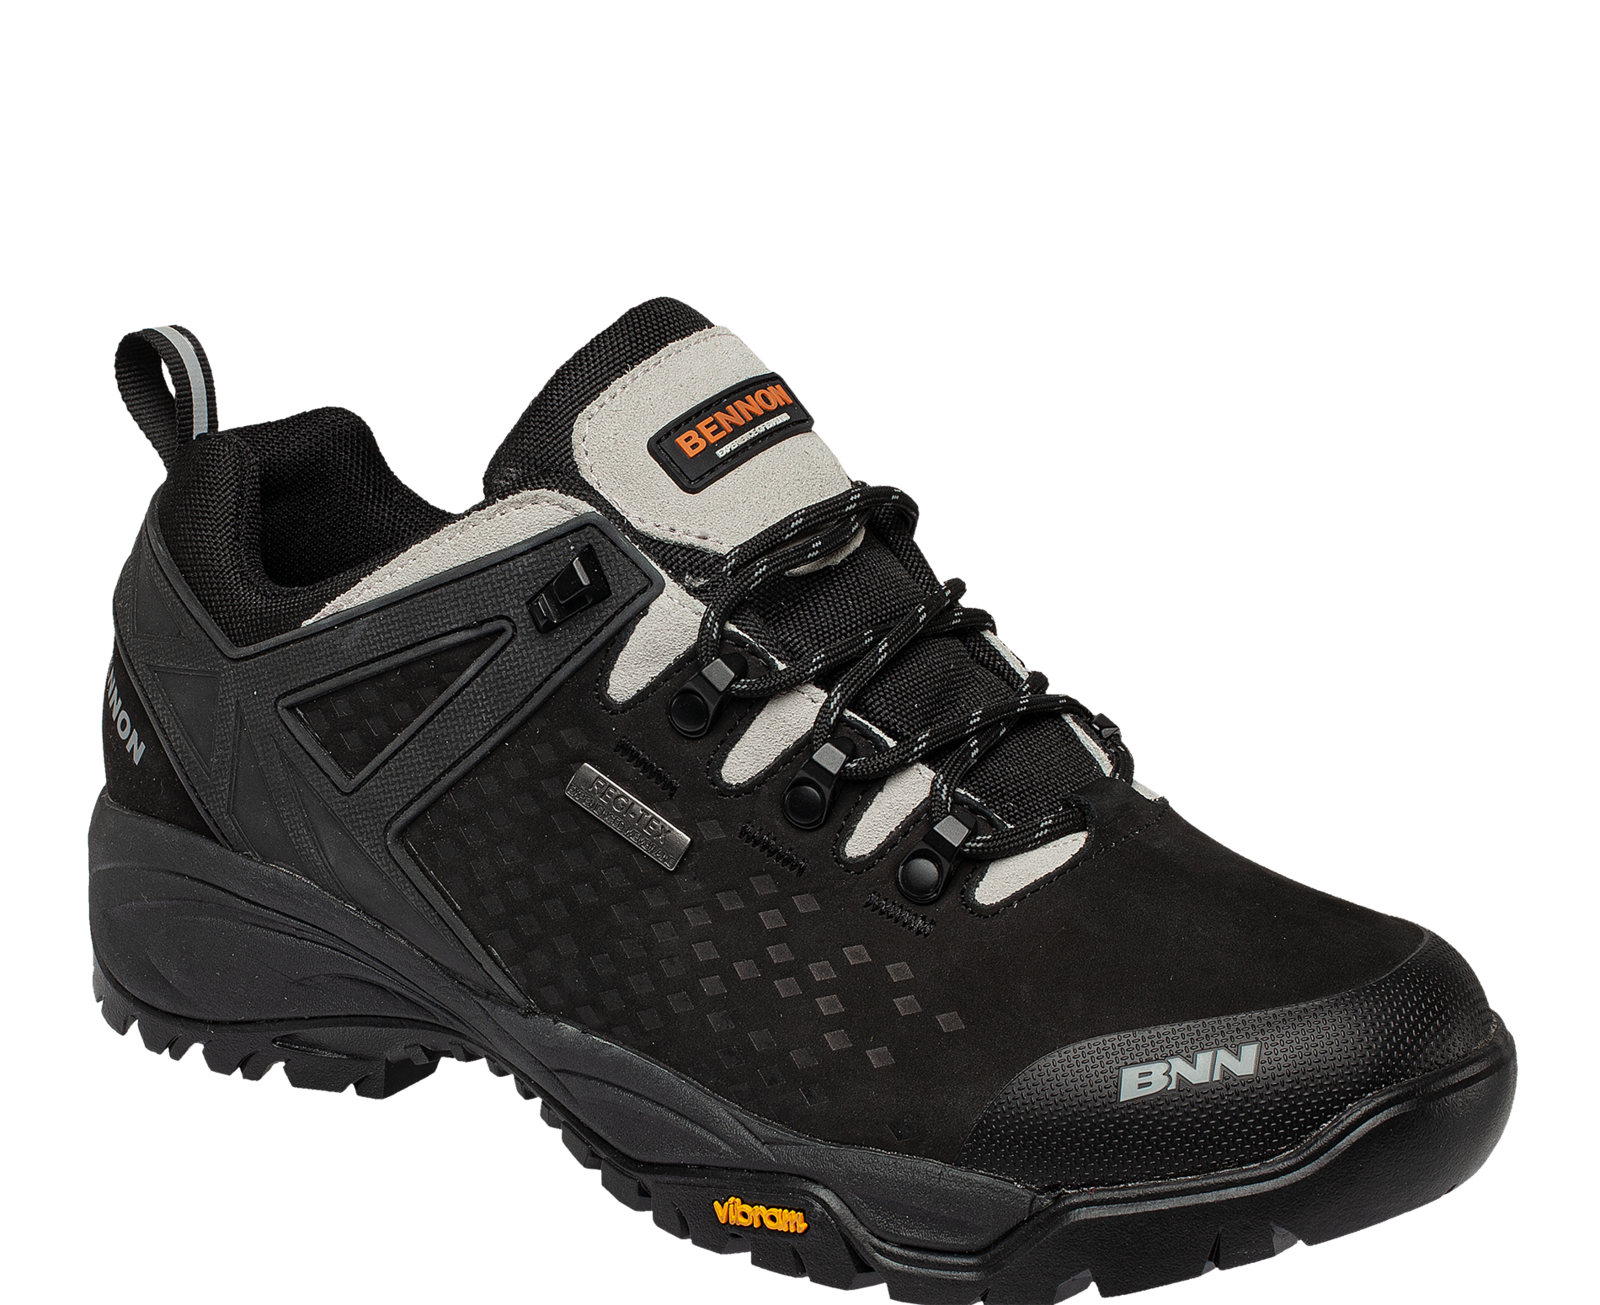 Outdoorová obuv Bennon Recado XTR O2 s membránou - veľkosť: 50, farba: čierna